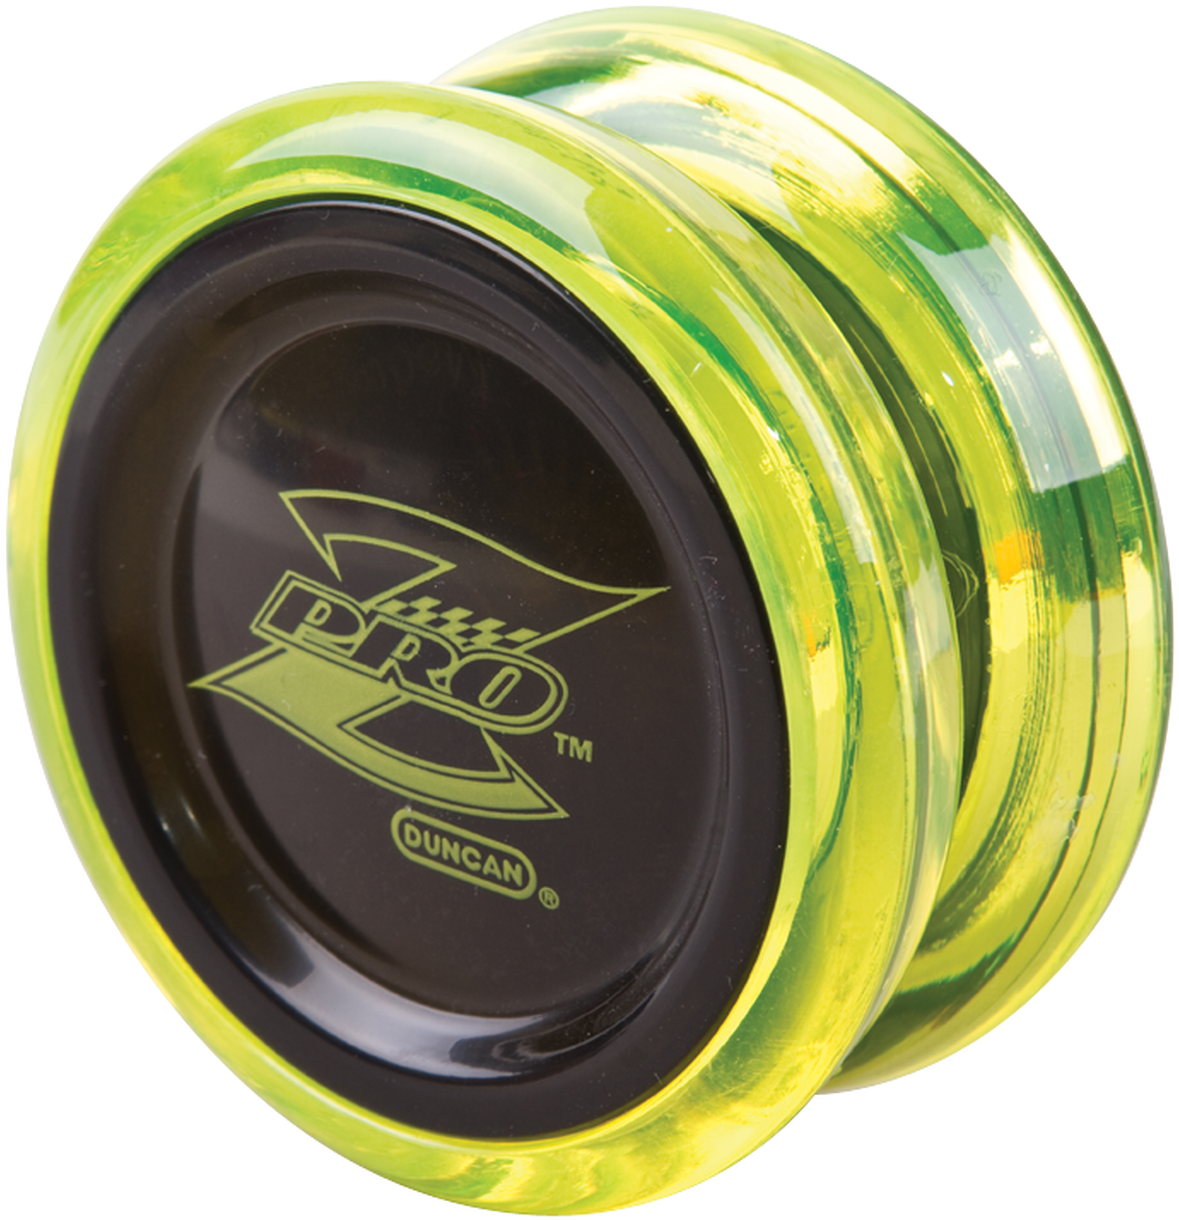 A Yellow Yo-yo With Black Rim